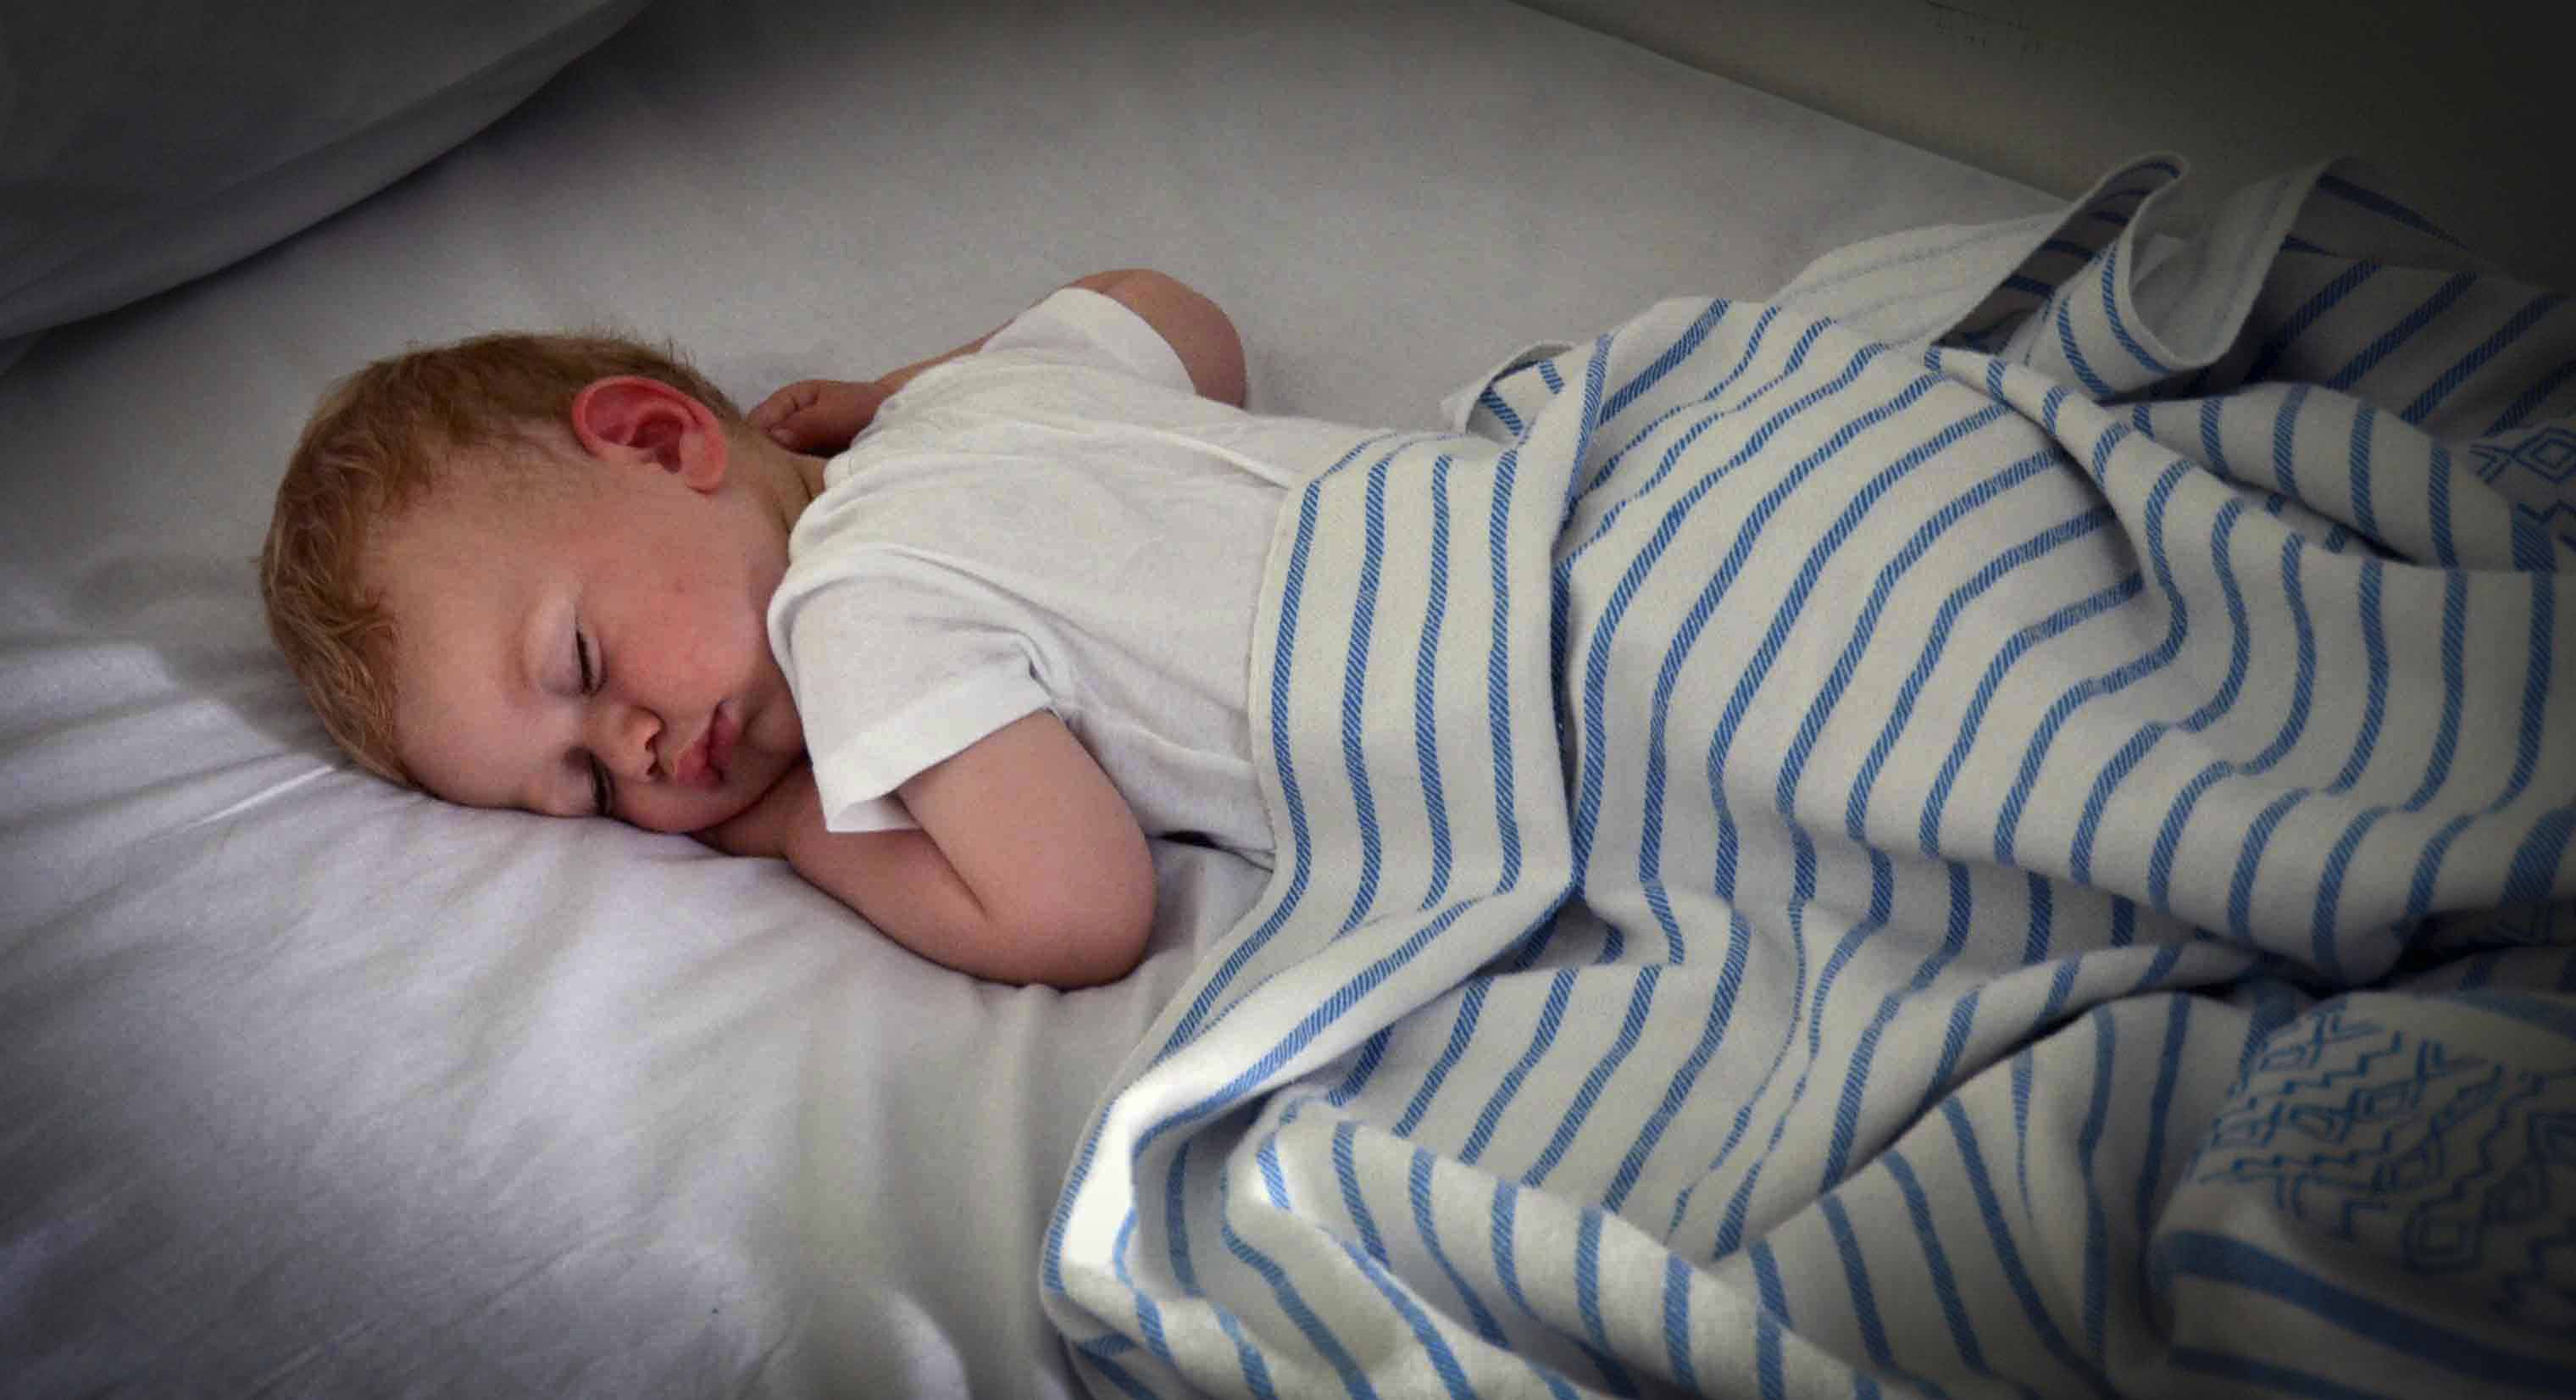 Mis kell peaks teie laps magama minema? Praktiline juhend VASTAVALT OMA VANUSELE.